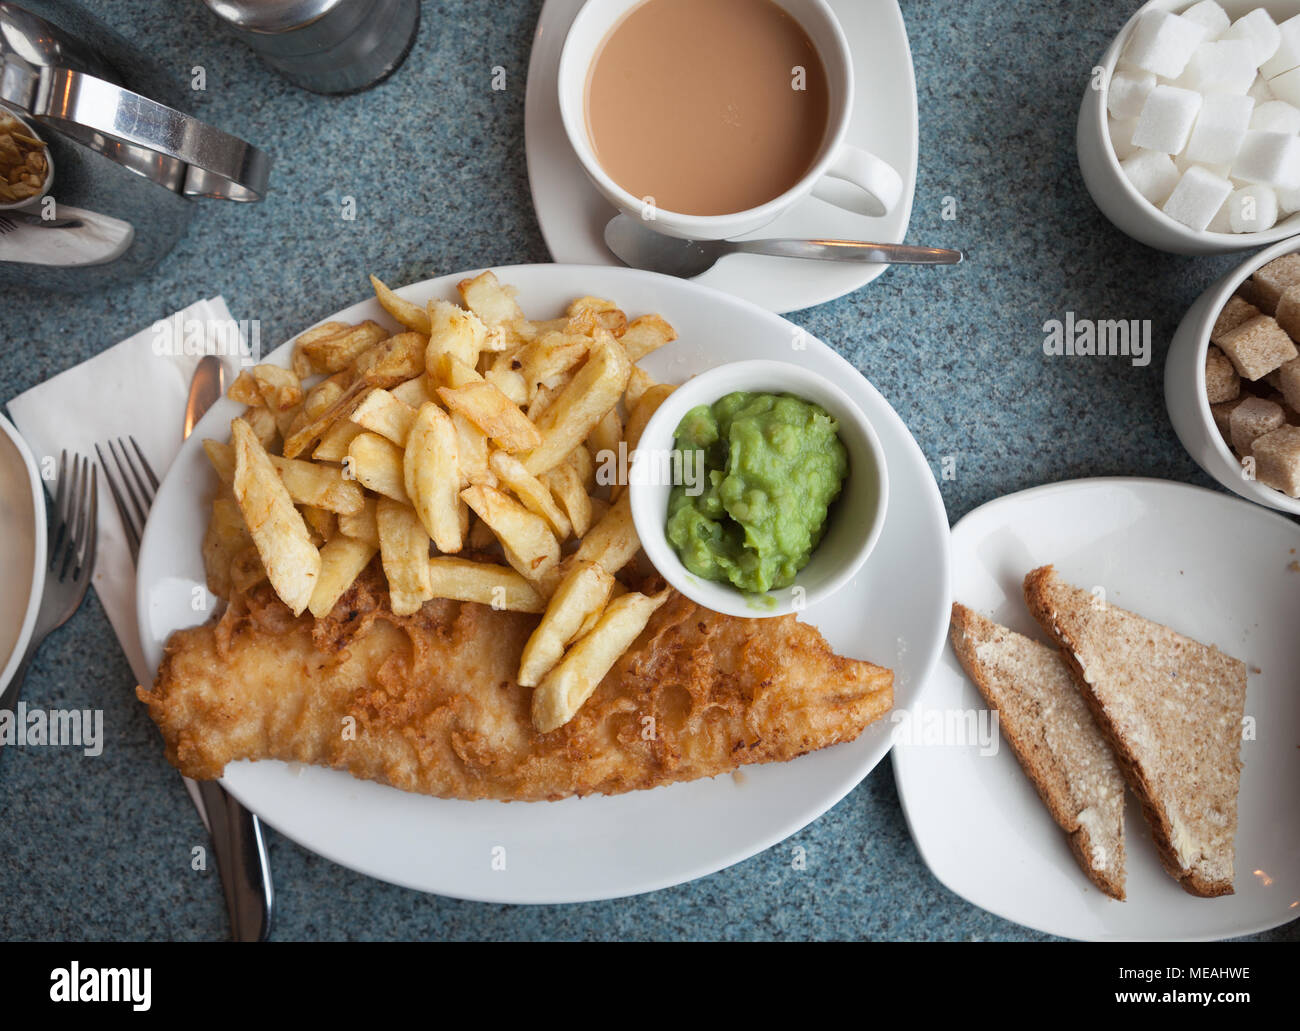 Fish and chips britannique authentique, avec petits pois, pain beurré et d'une tasse de thé Banque D'Images